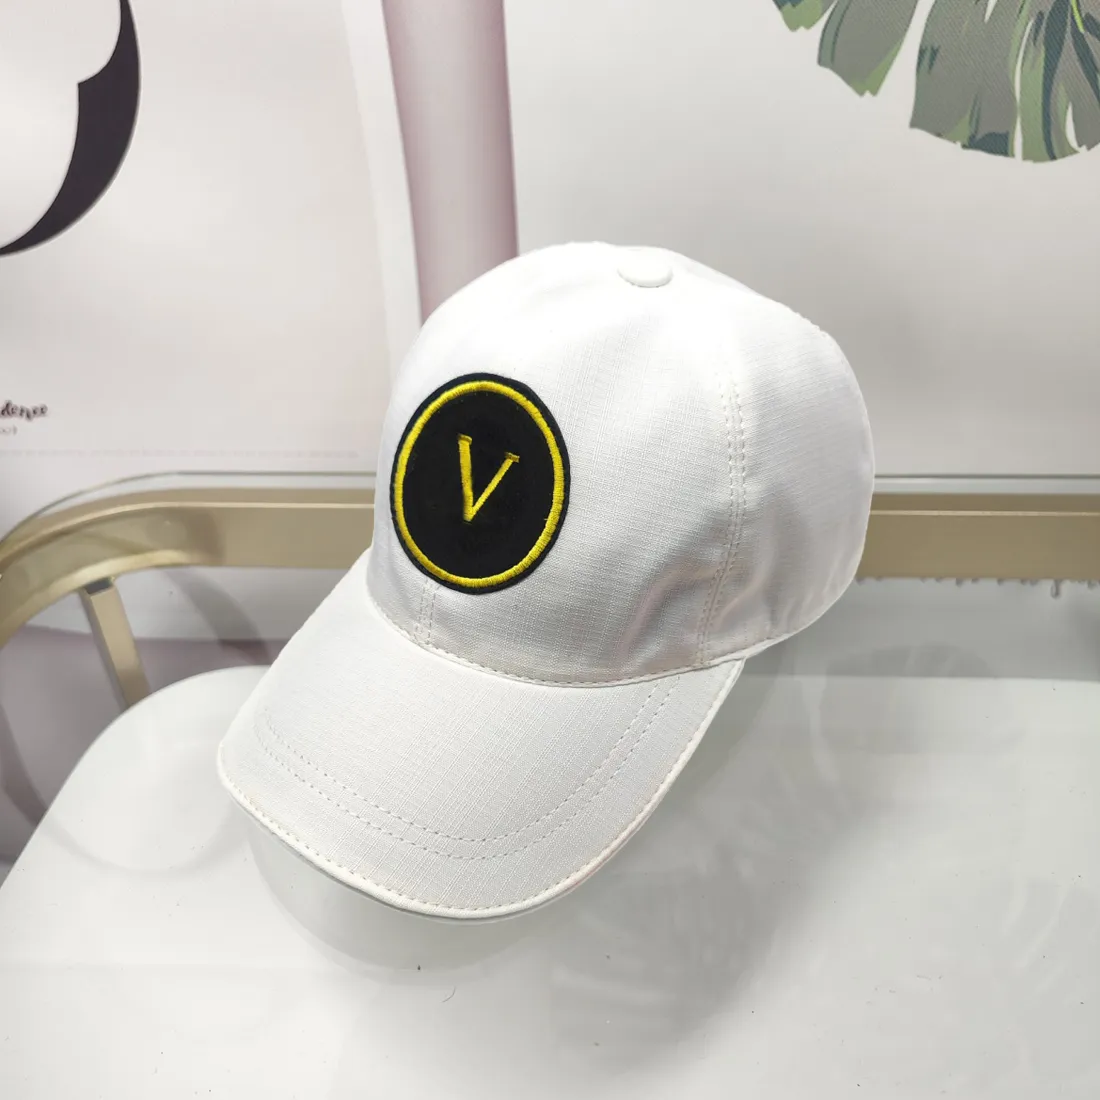 새로운 스타일 패션 볼 모자 망 디자이너 야구 모자 럭셔리 남여 모자 조정 가능한 모자 스트리트 장착 패션 스포츠 Casquette 자수 Cappelli 여름 태양 모자